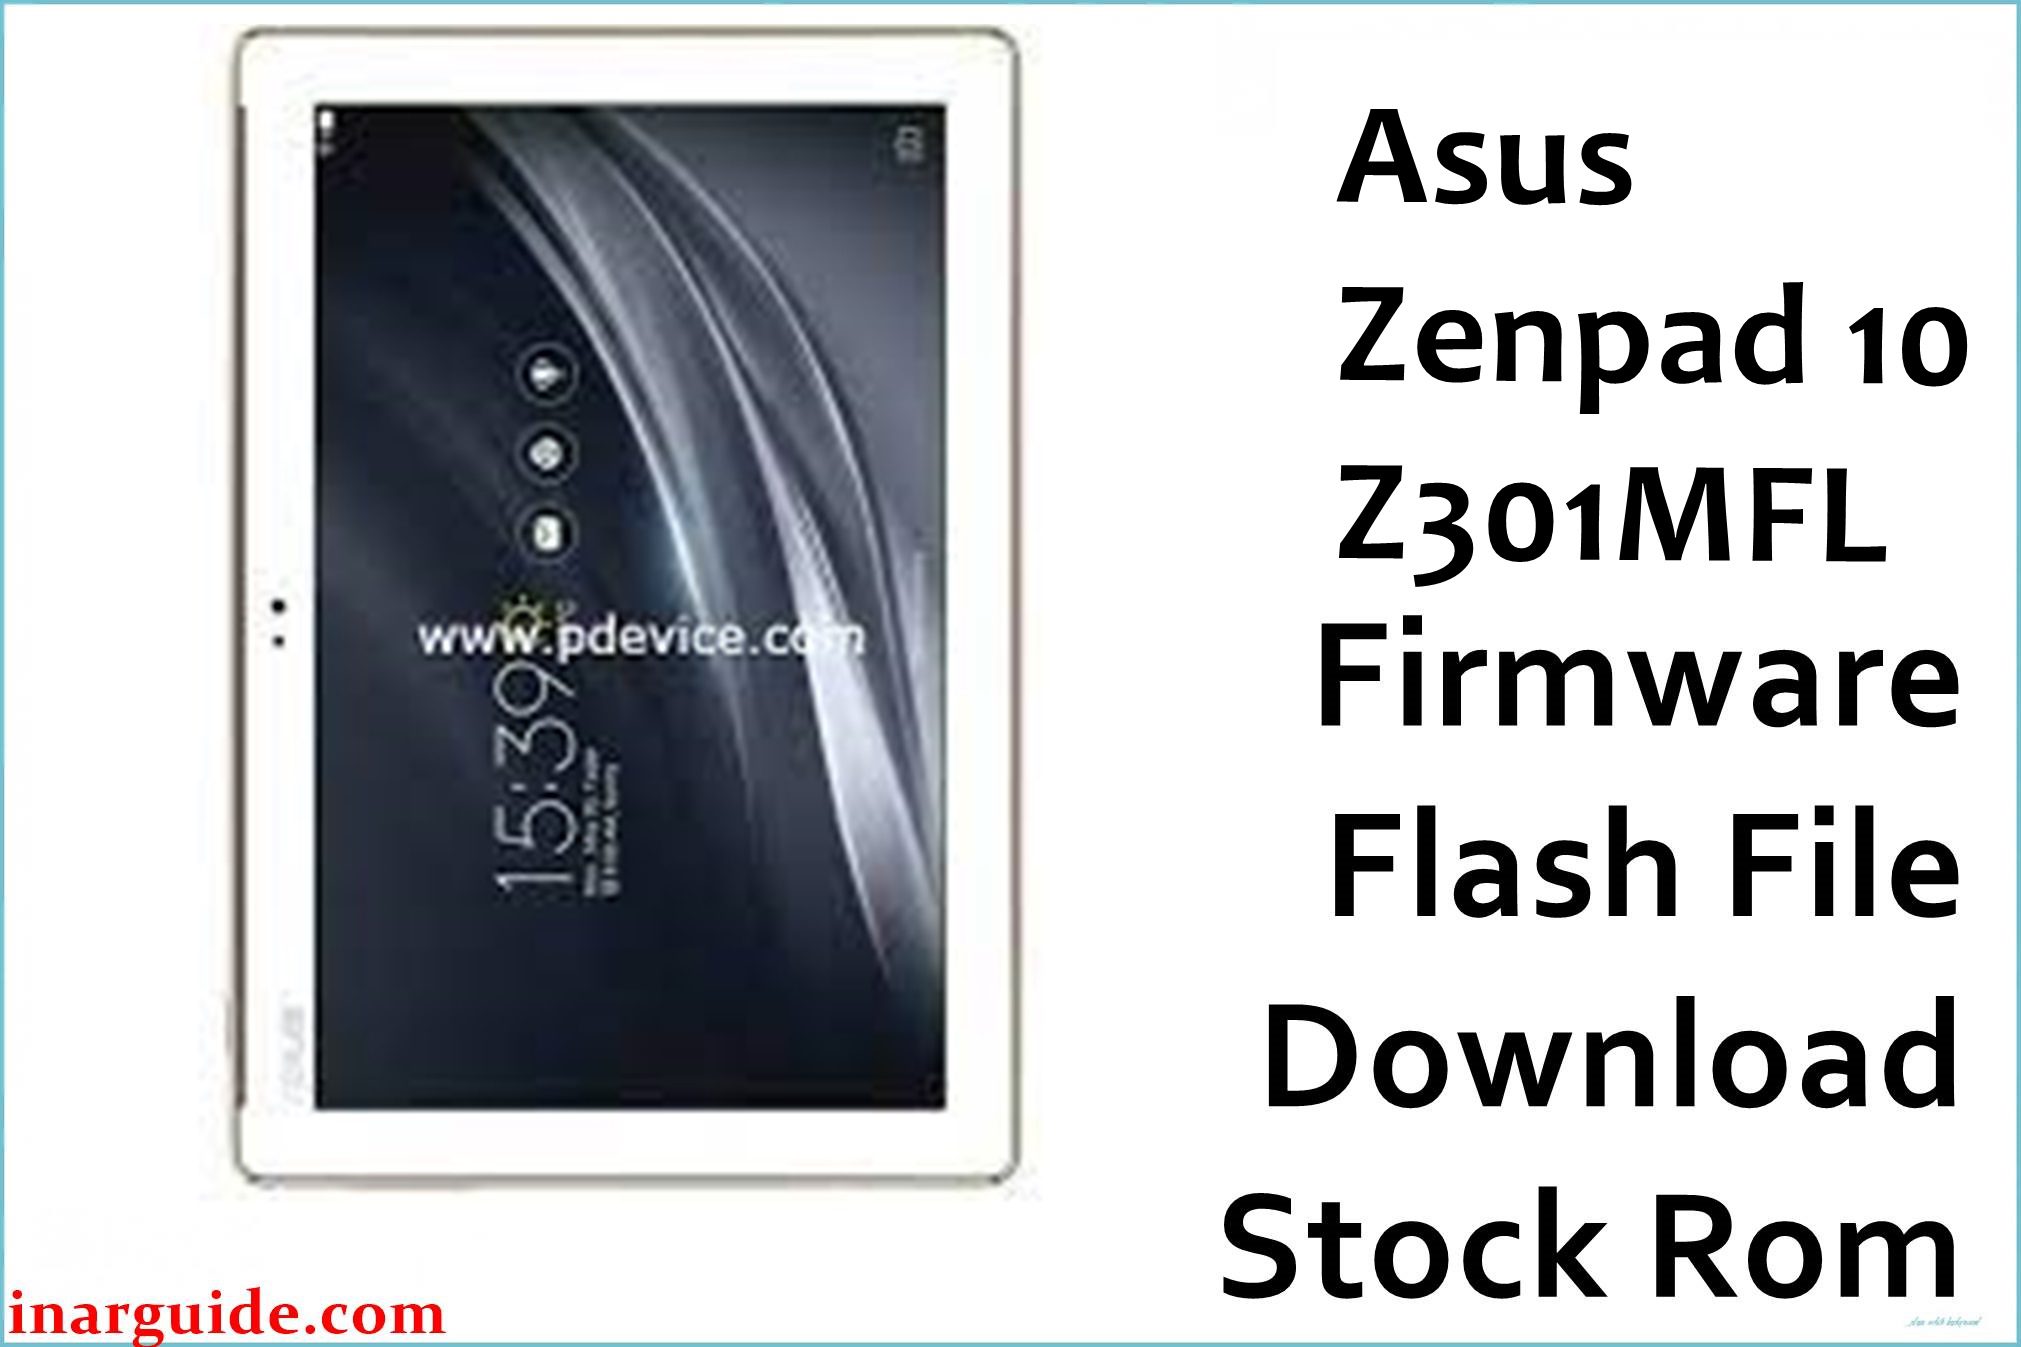 Asus Zenpad 10 Z301MFL